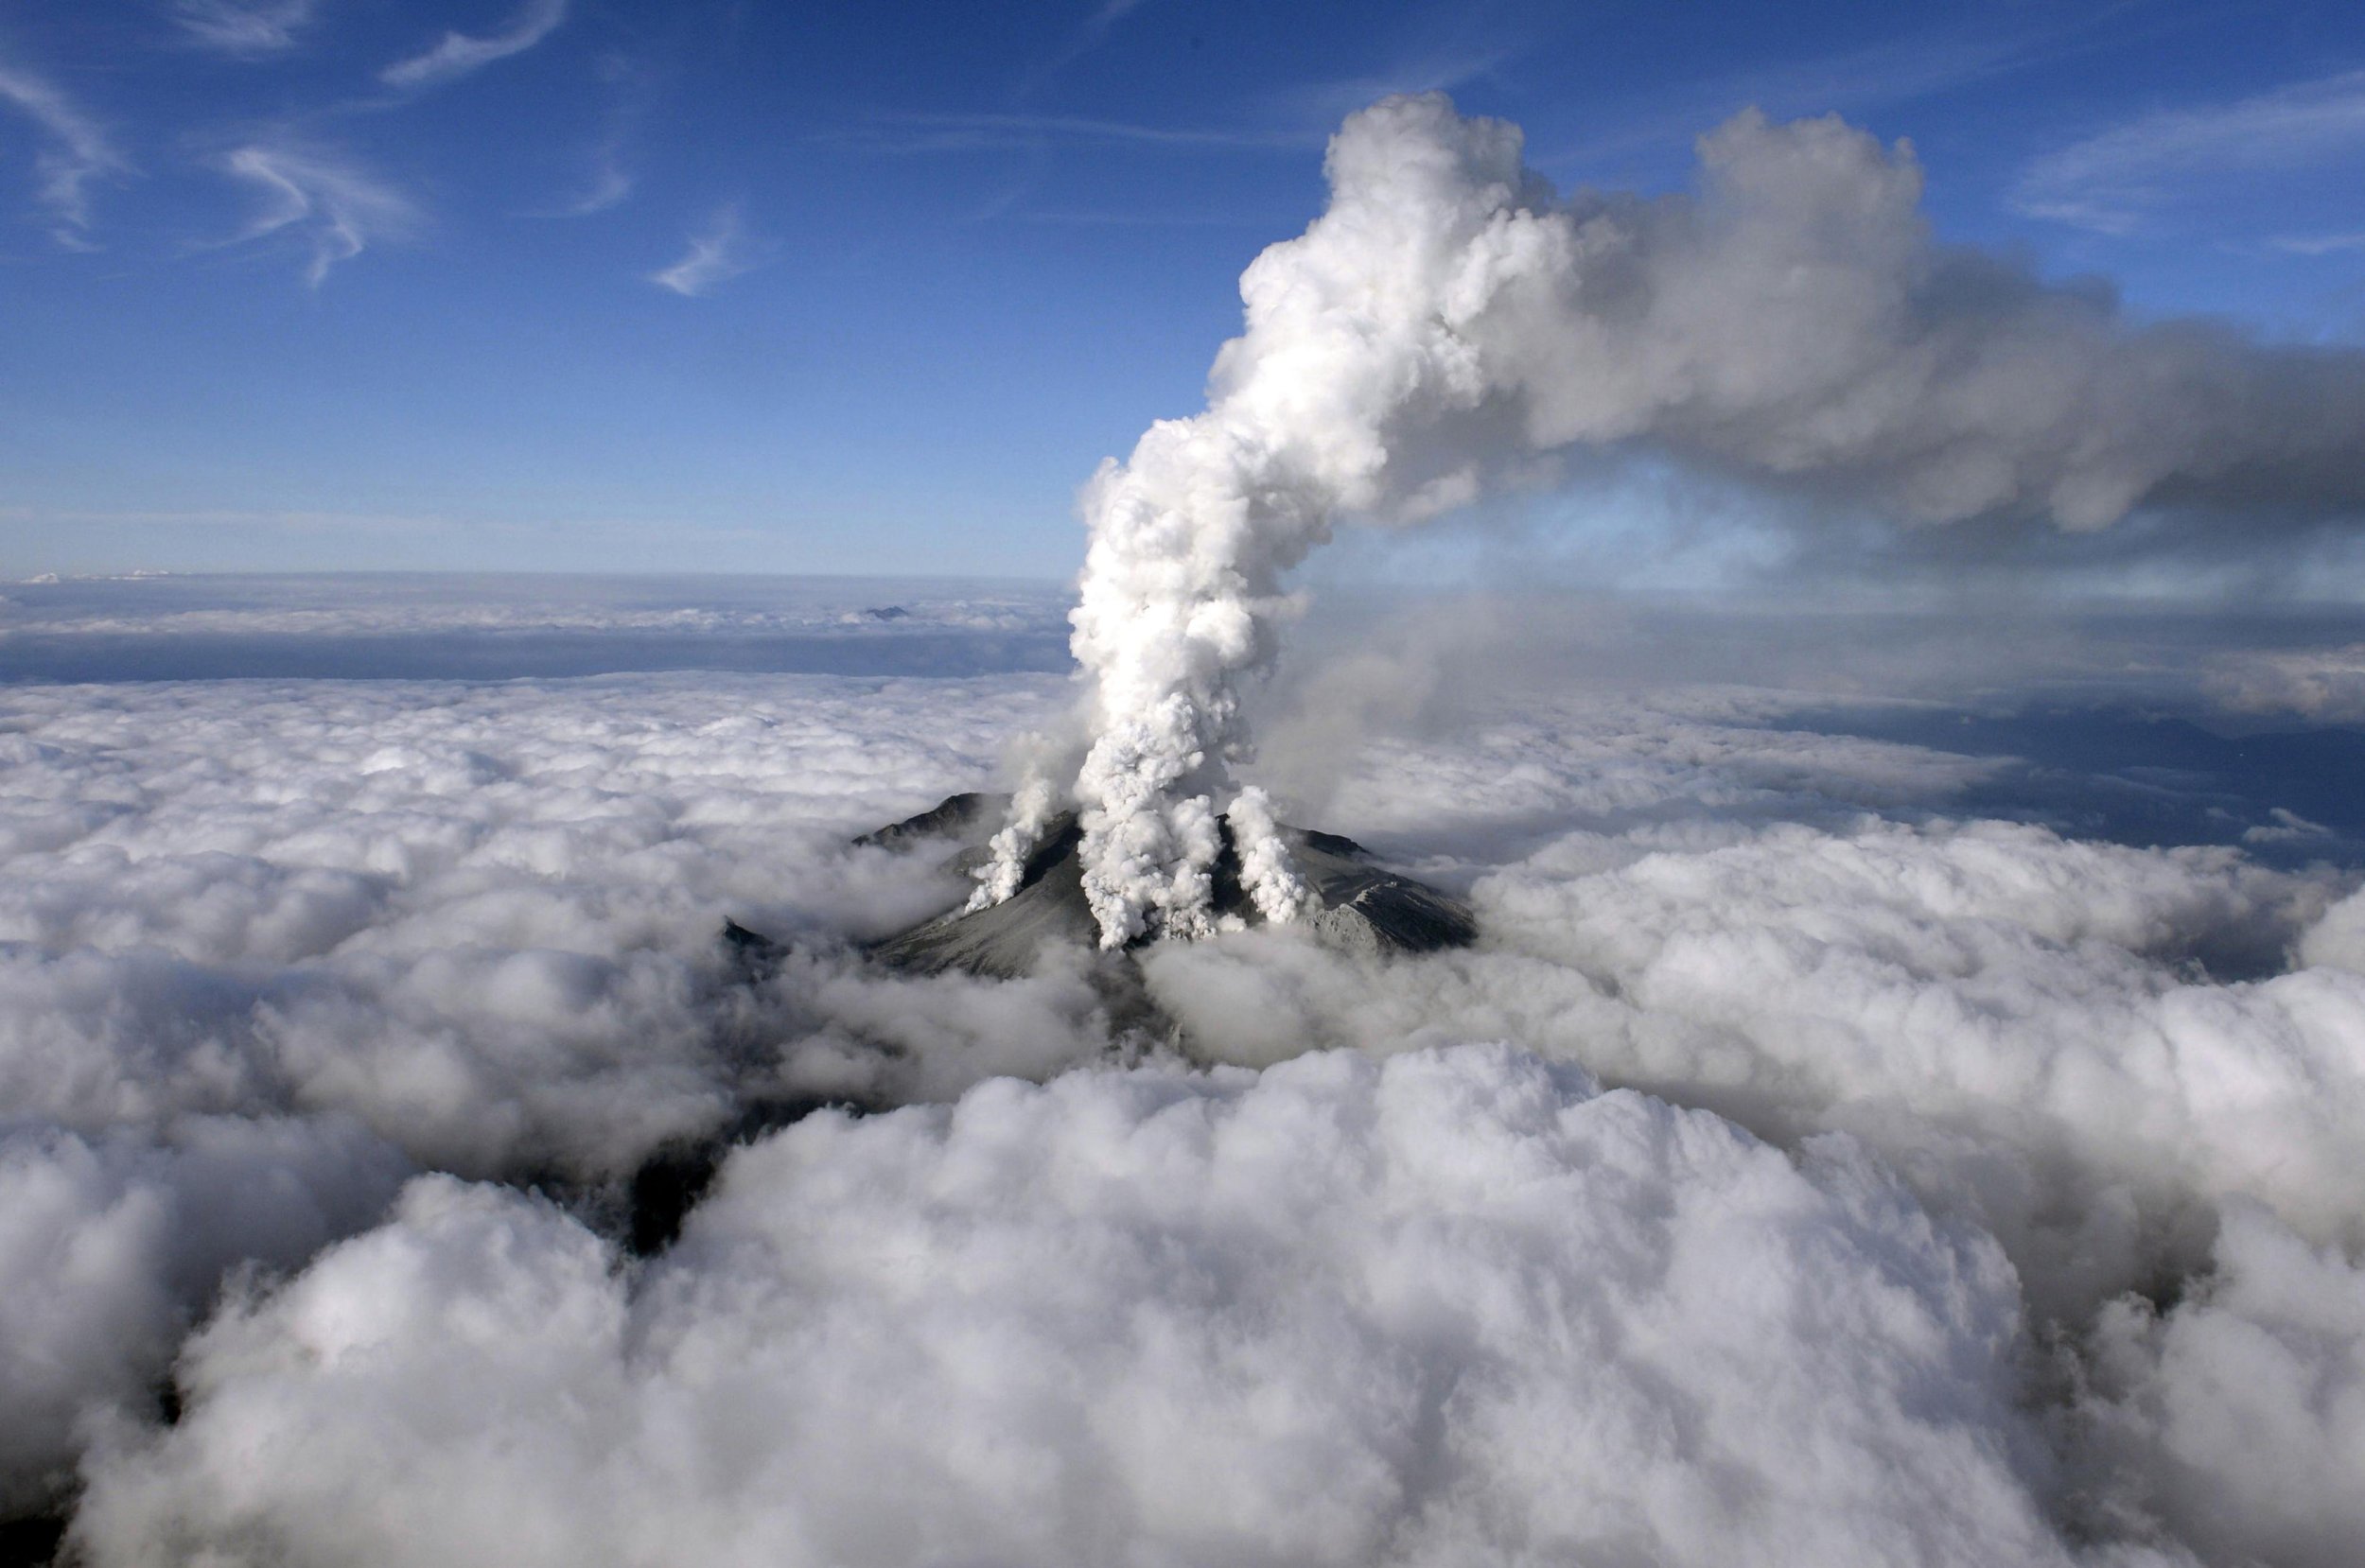 Mount Ontake Eruption